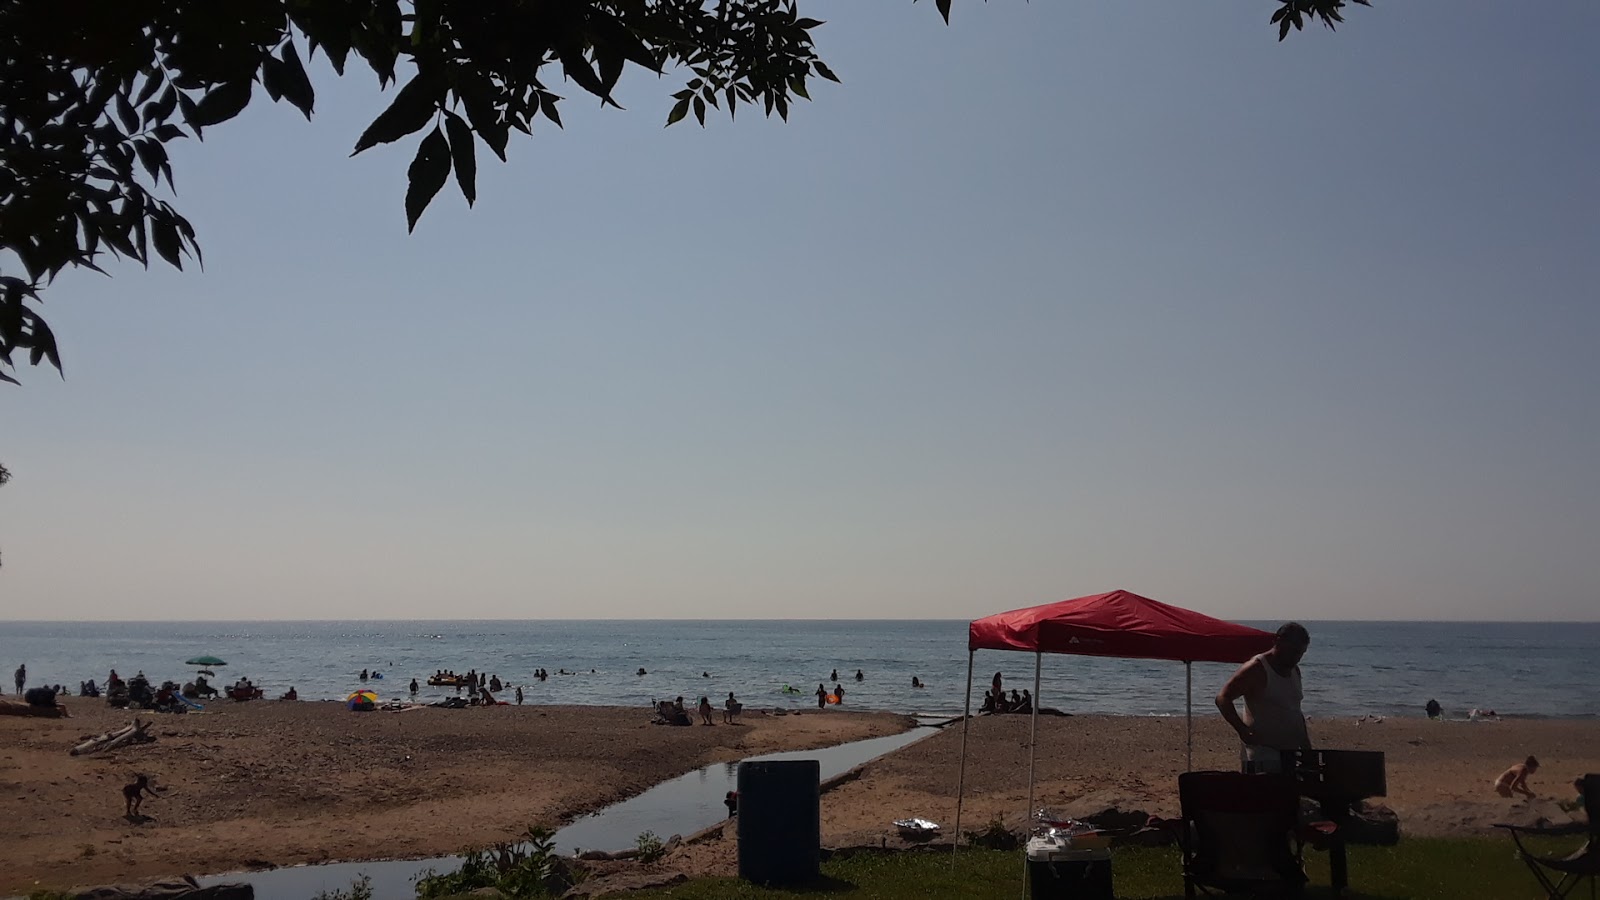 Lake Erie Beach'in fotoğrafı ve yerleşim